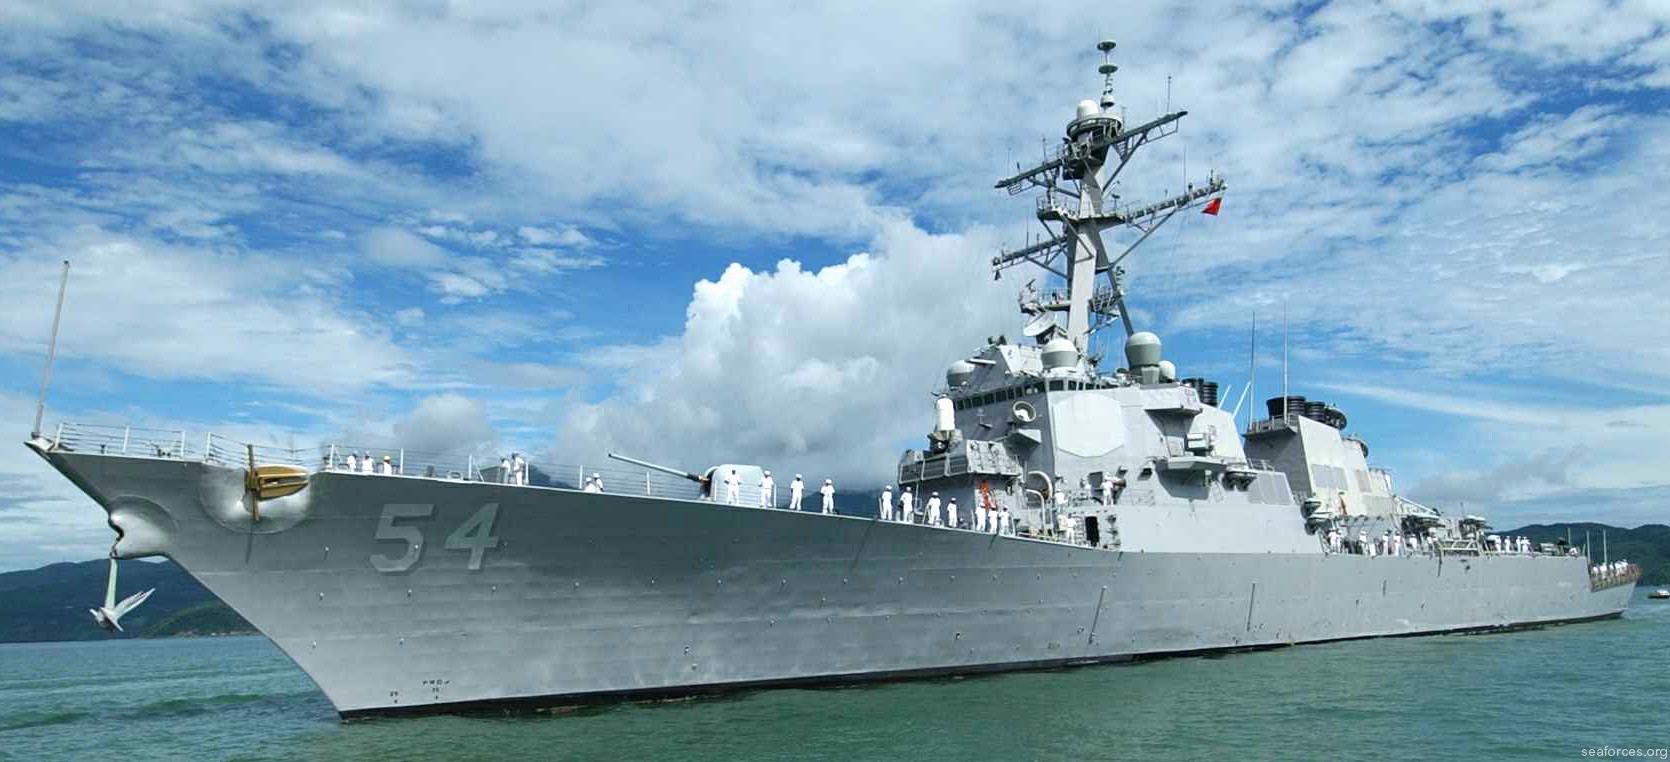 ddg-54 uss curtis wilbur destroyer us navy 79